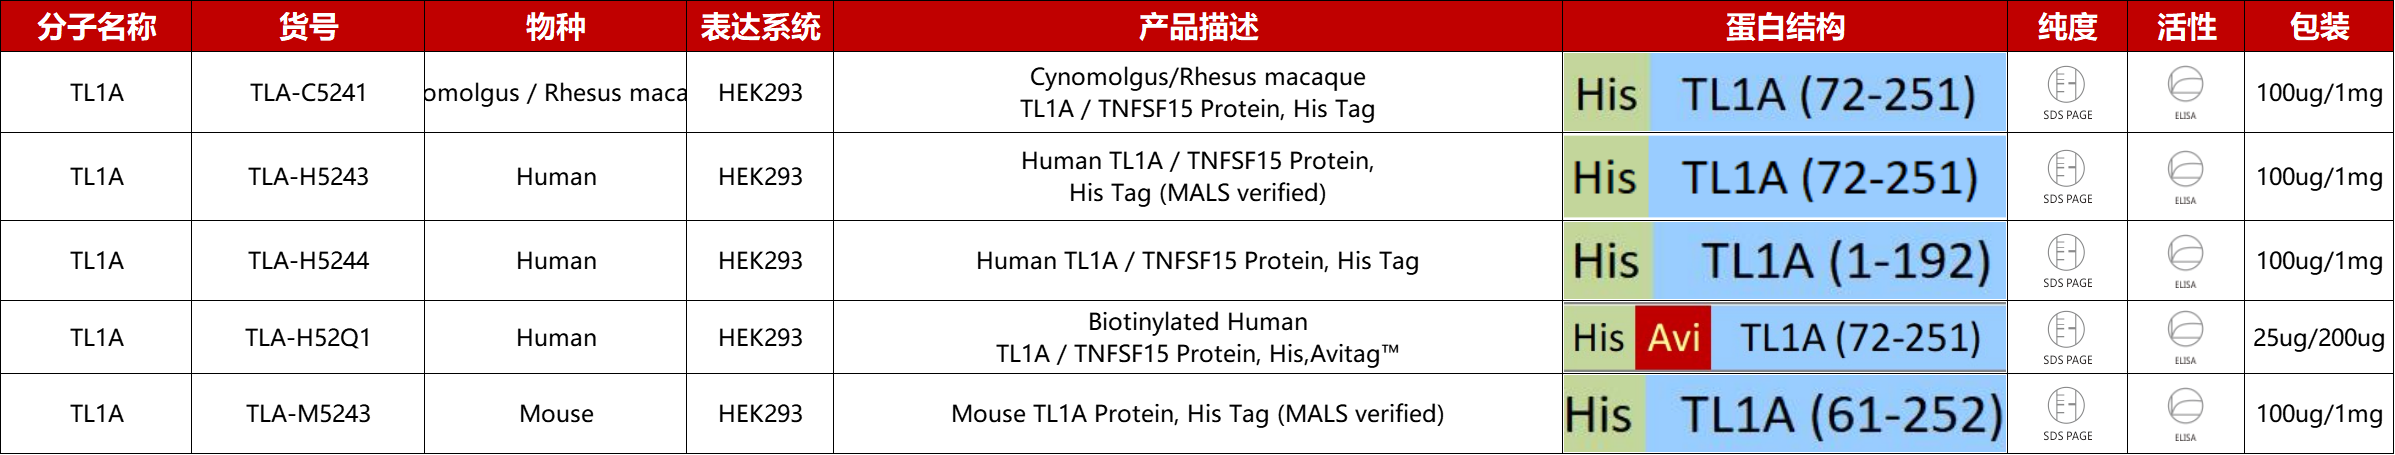 TL1A重组蛋白产品列表